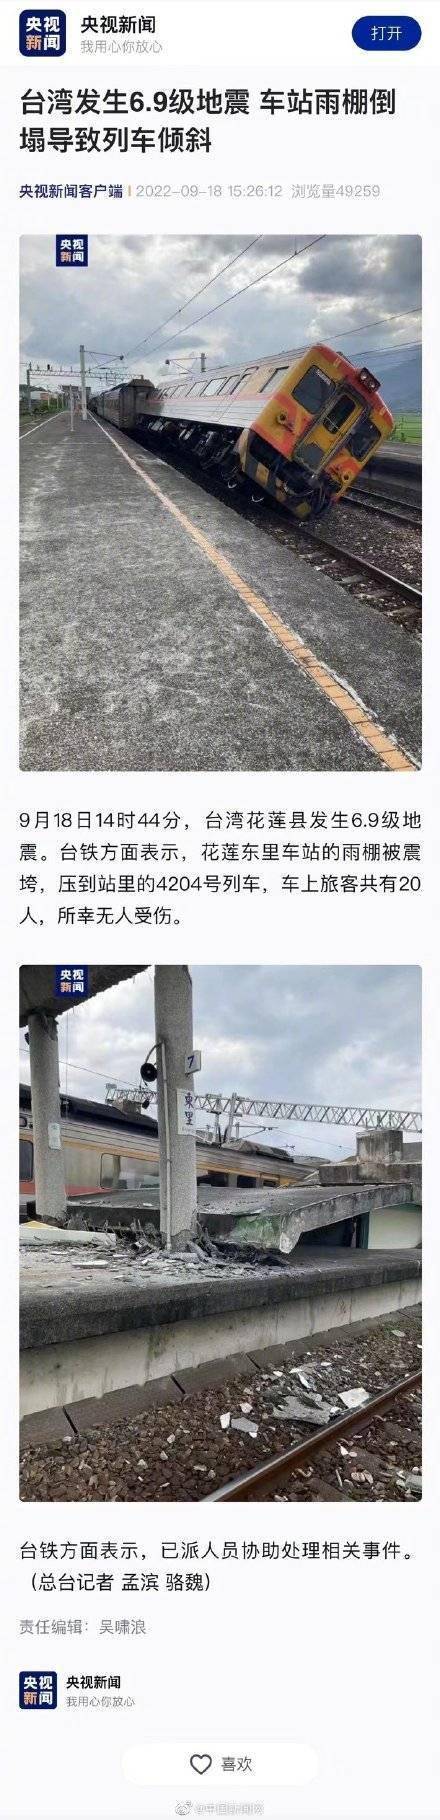 台湾发生6.9级地震 车站雨棚倒塌导致列车倾斜